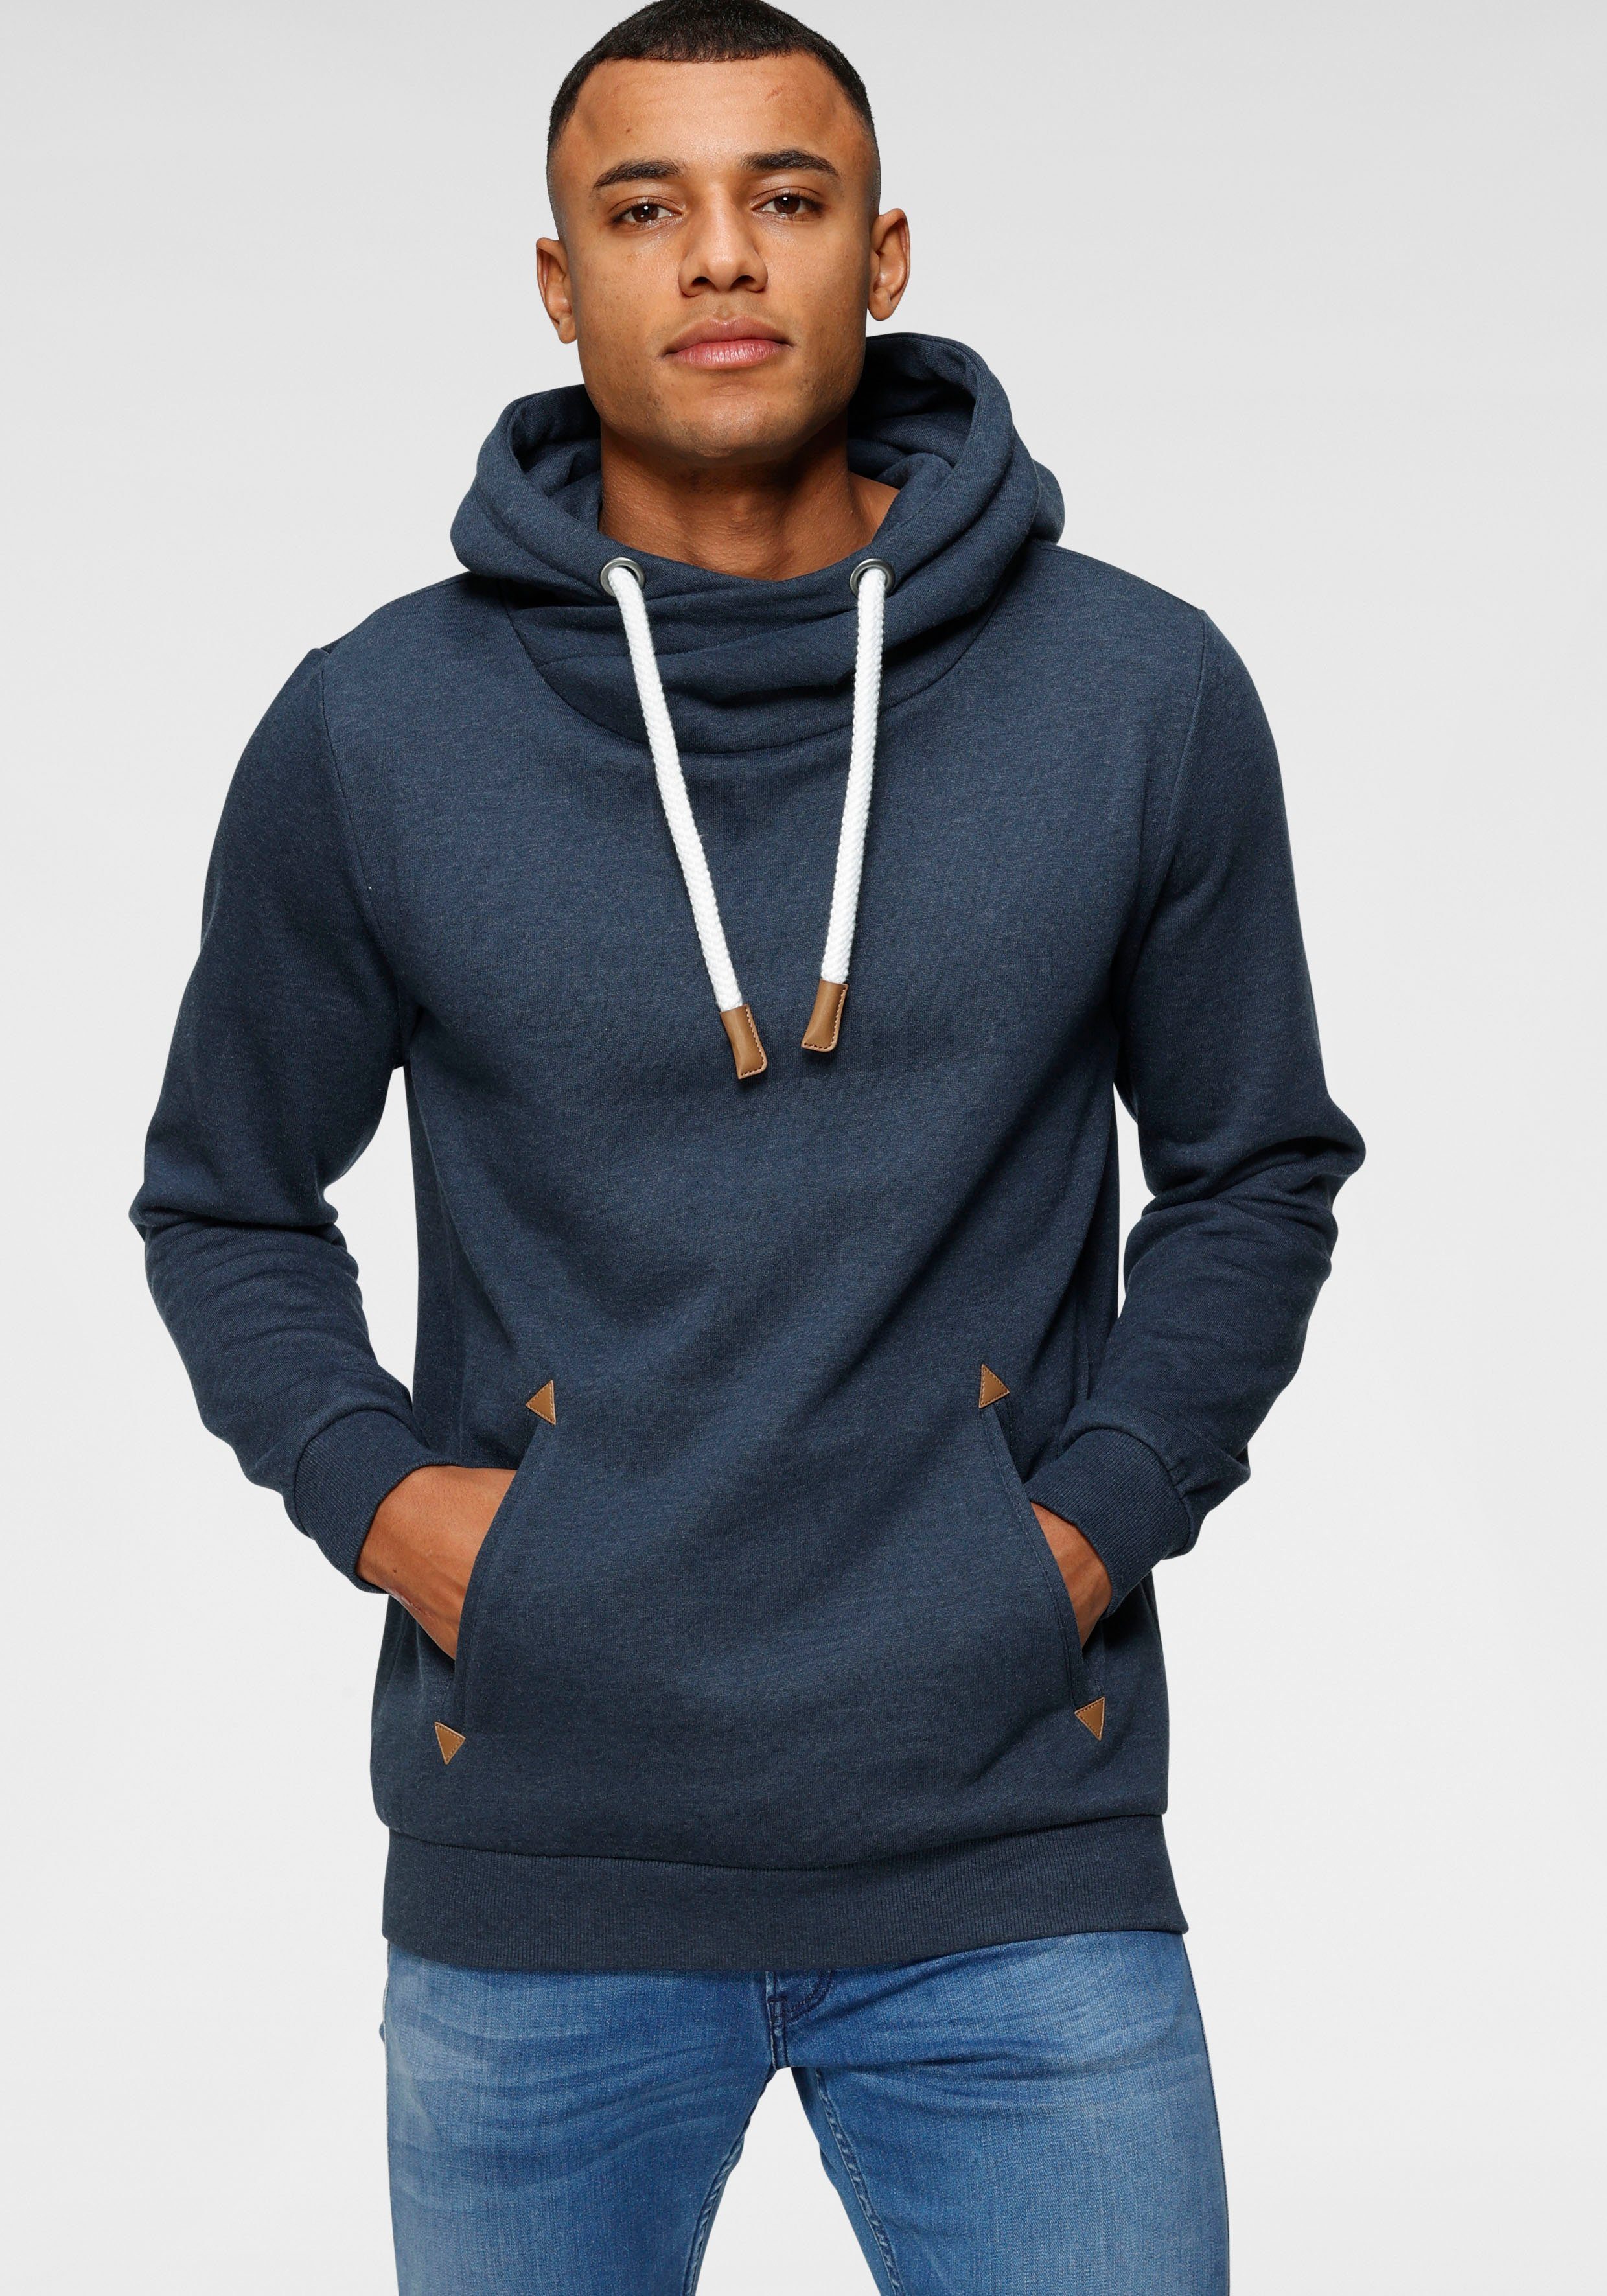 Sweatshirt in blau online kaufen | OTTO